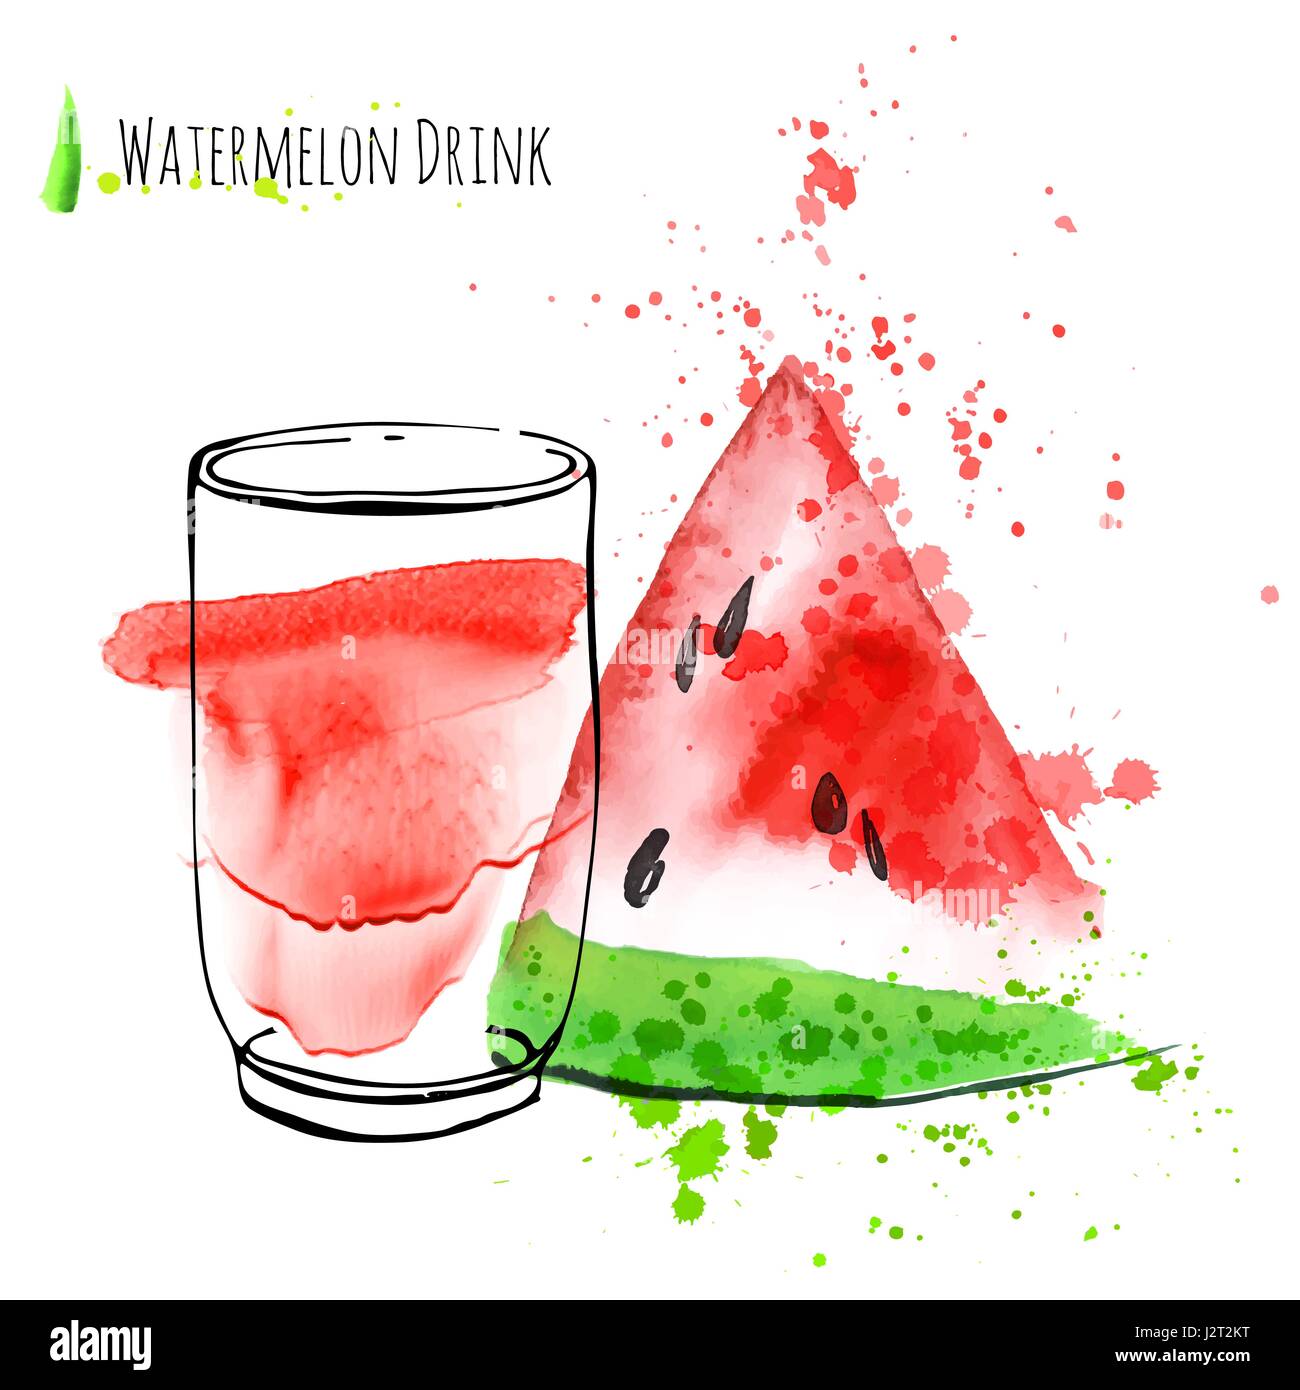 Wassermelonen-Drink mit Scheibe Wassermelone. Frischer Saft im Glas mit Wassermelone Frieden. Aquarell Hand zeichnen Kunstwerk. Stock Vektor